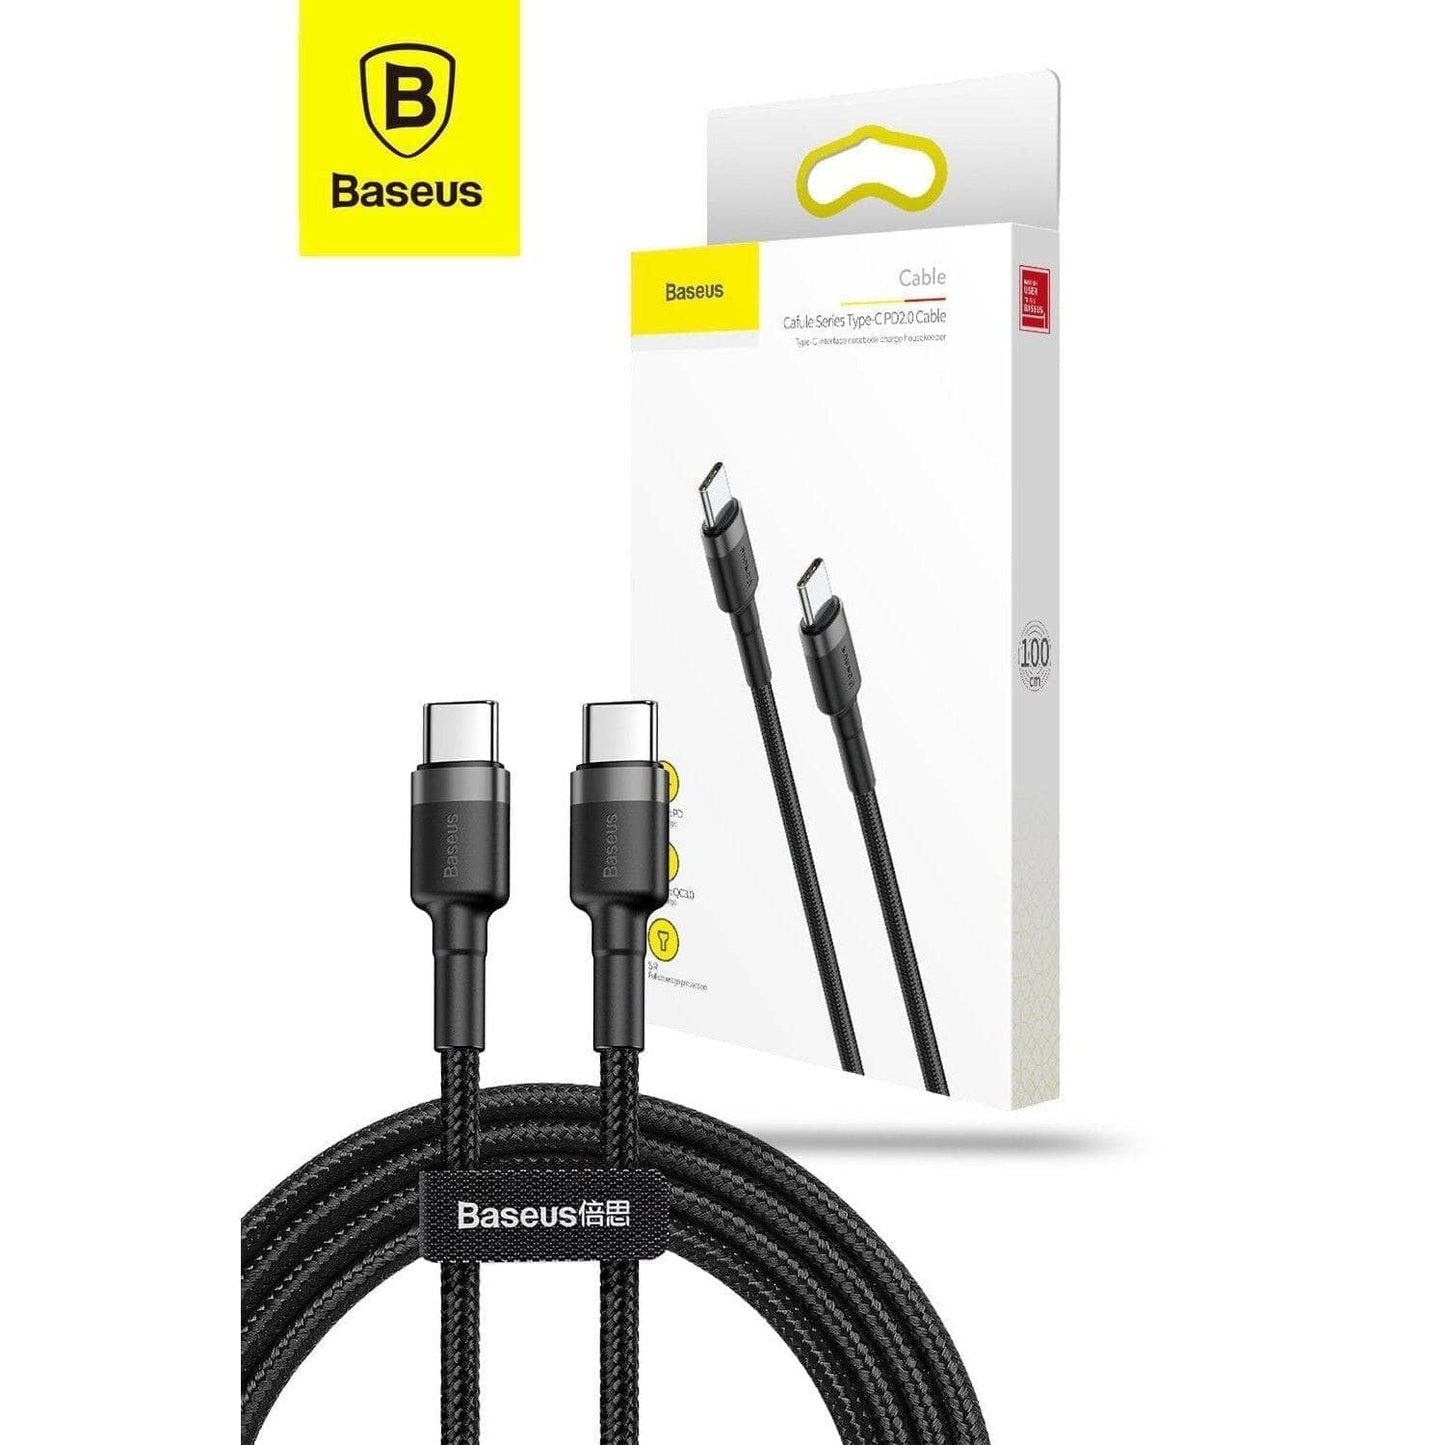 Baseus Cafule Tough Cable 1m 2m 3m Long (Grey Black)-Cable-Baseus-www.PhoneGuy.com.au